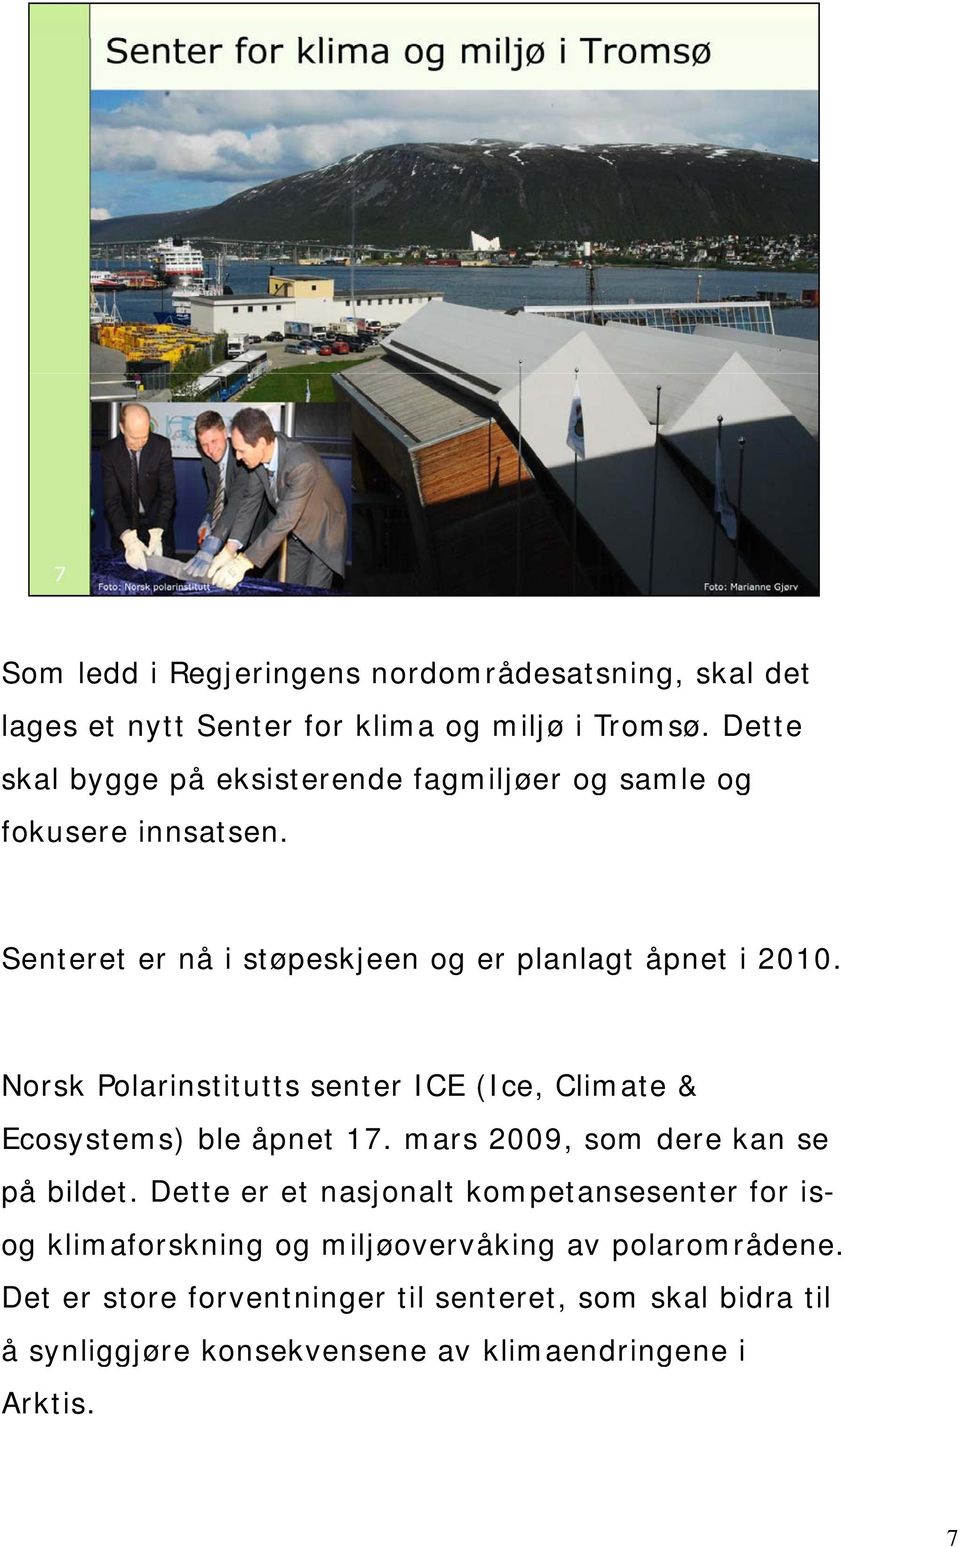 Norsk Polarinstitutts senter ICE (Ice, Climate & Ecosystems) ble åpnet 17. mars 2009, som dere kan se på bildet.